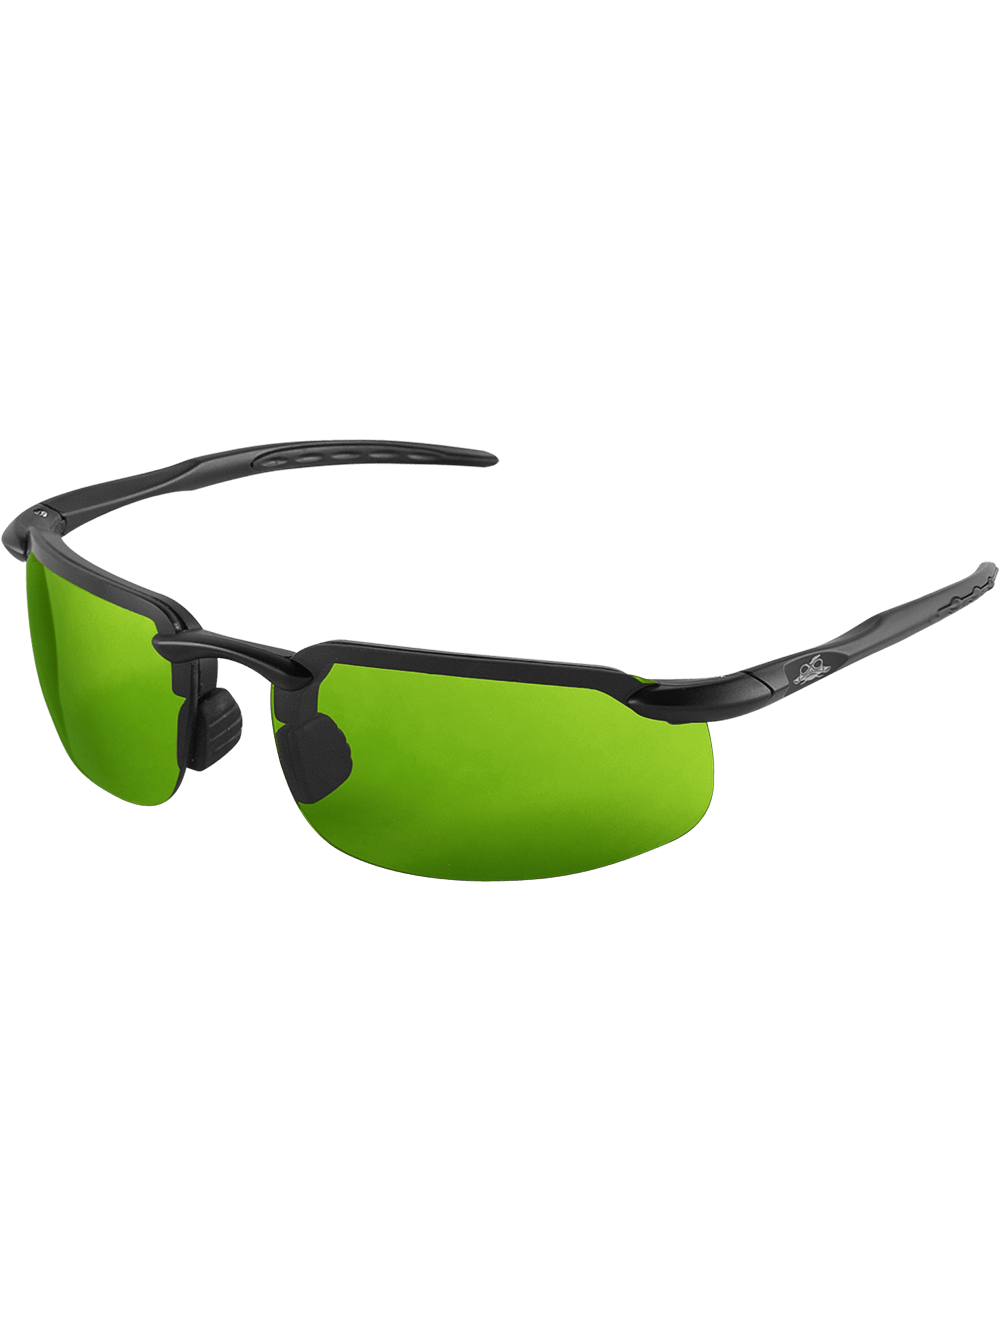 Swordfish® Green IR Shade 2.5 Lens, Matte Black Frame Safety Glasses - BH10616AF